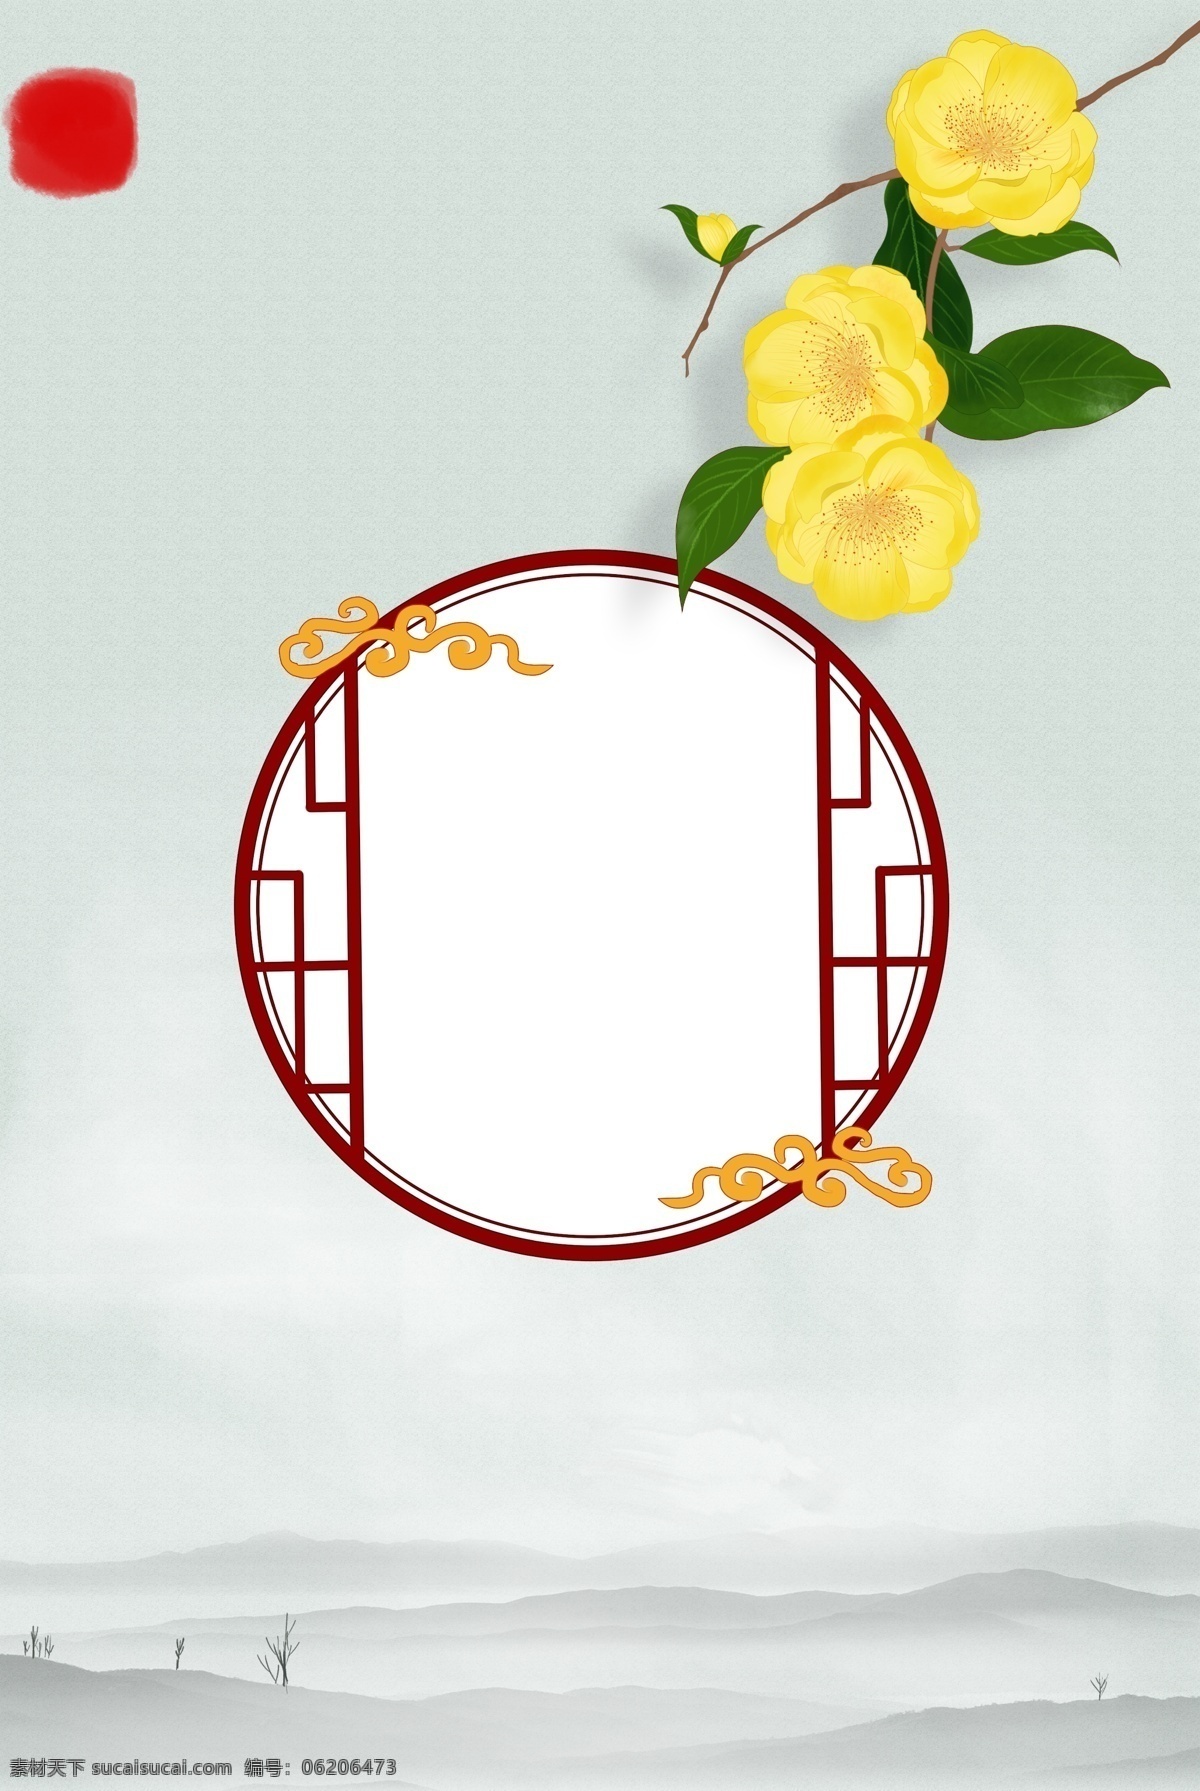 花卉 植物 工笔画 背景 古典 中国风 花鸟 鸟 简约 复古 荷叶